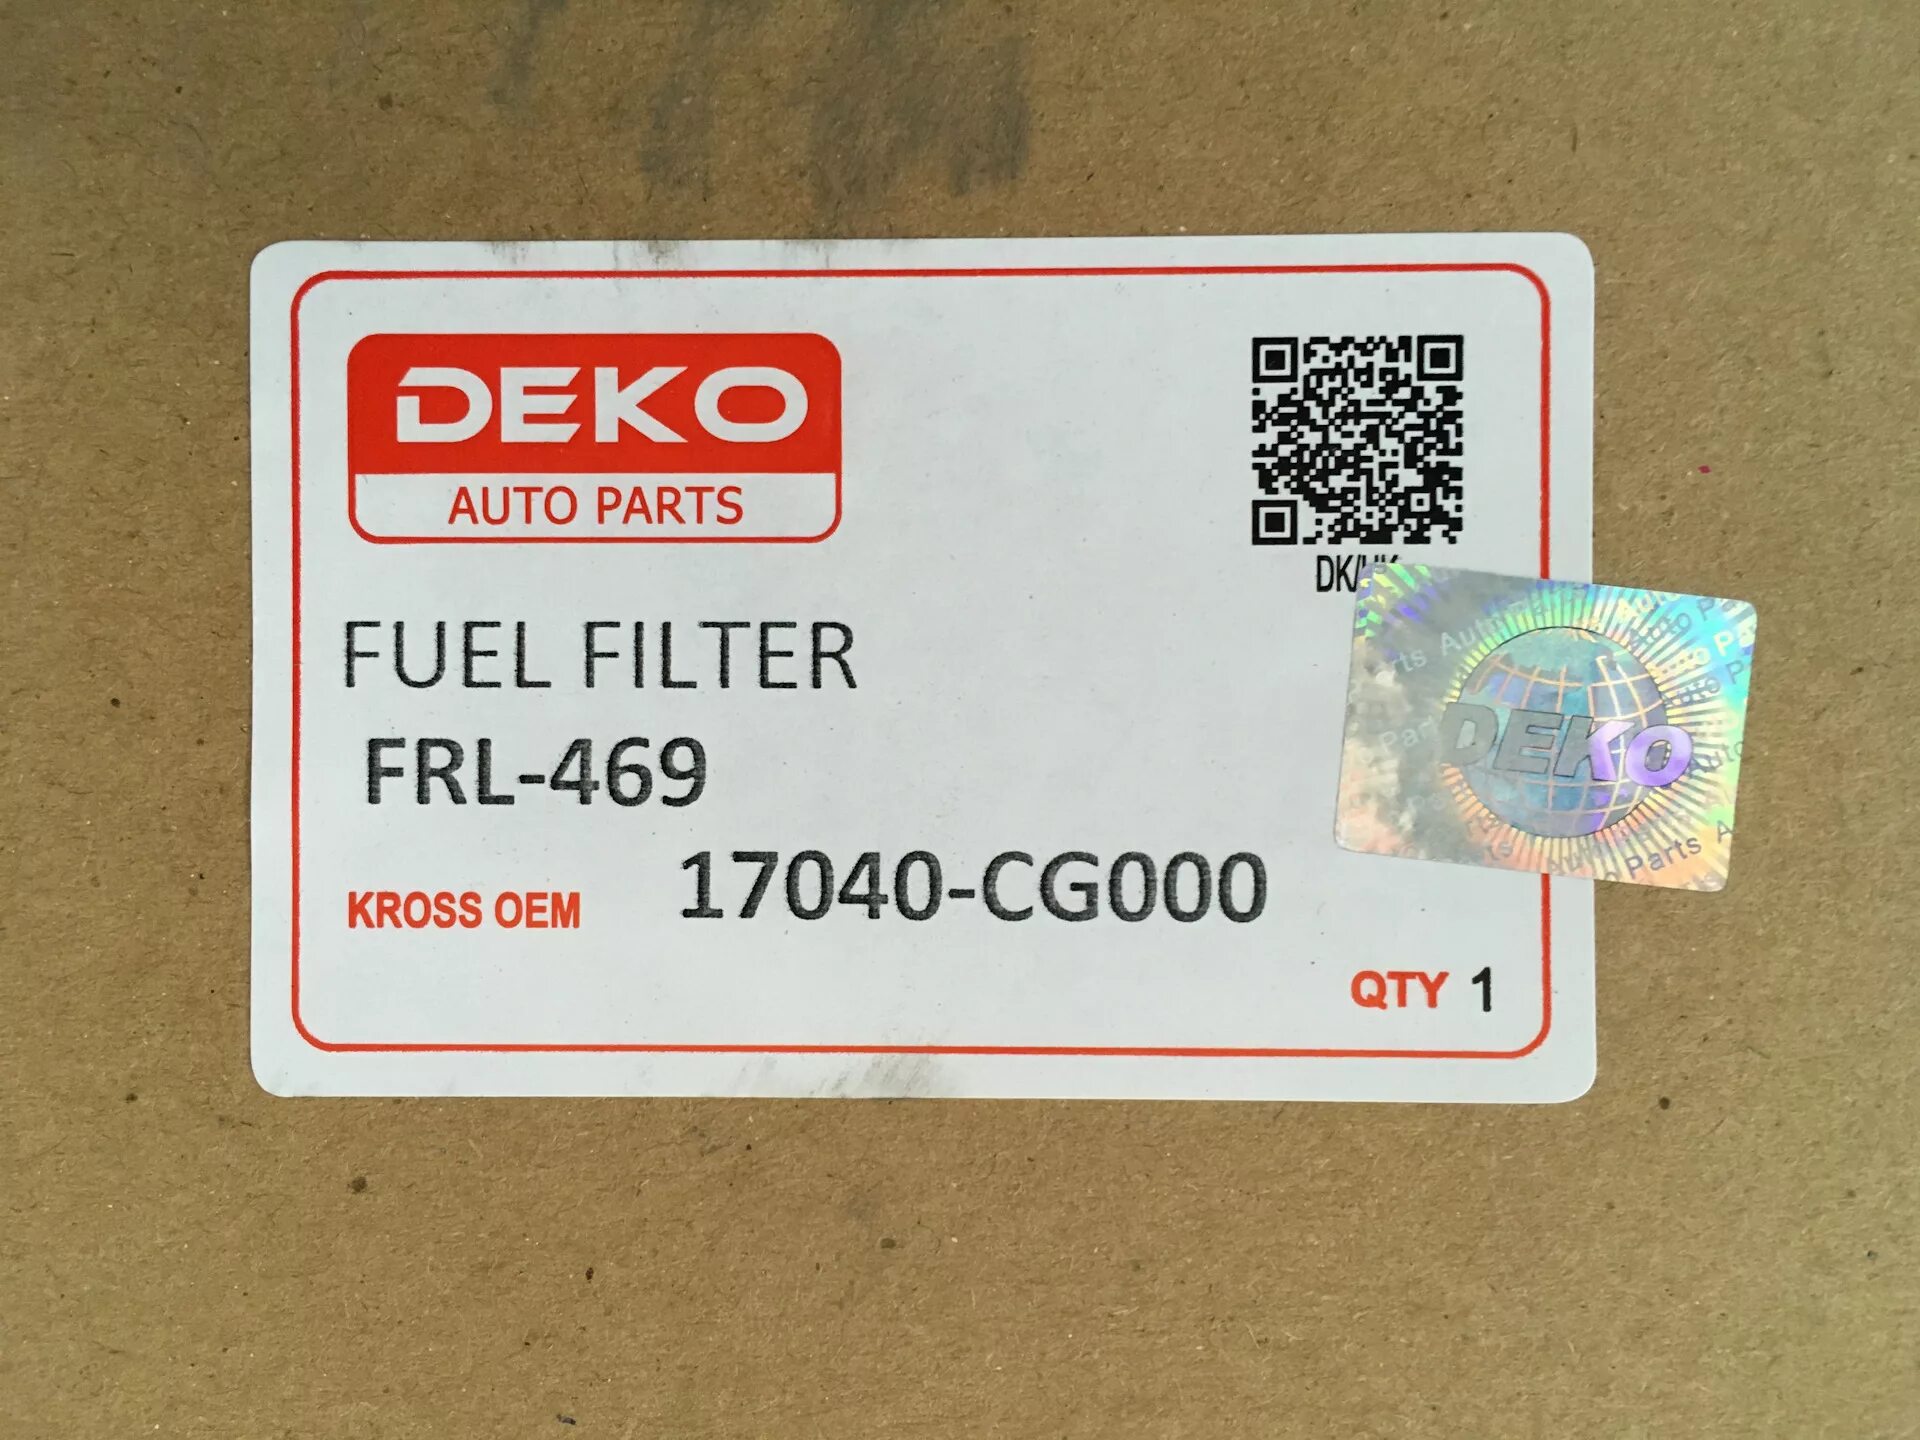 Deko auto Parts 1117. Part n035022047. E n parts